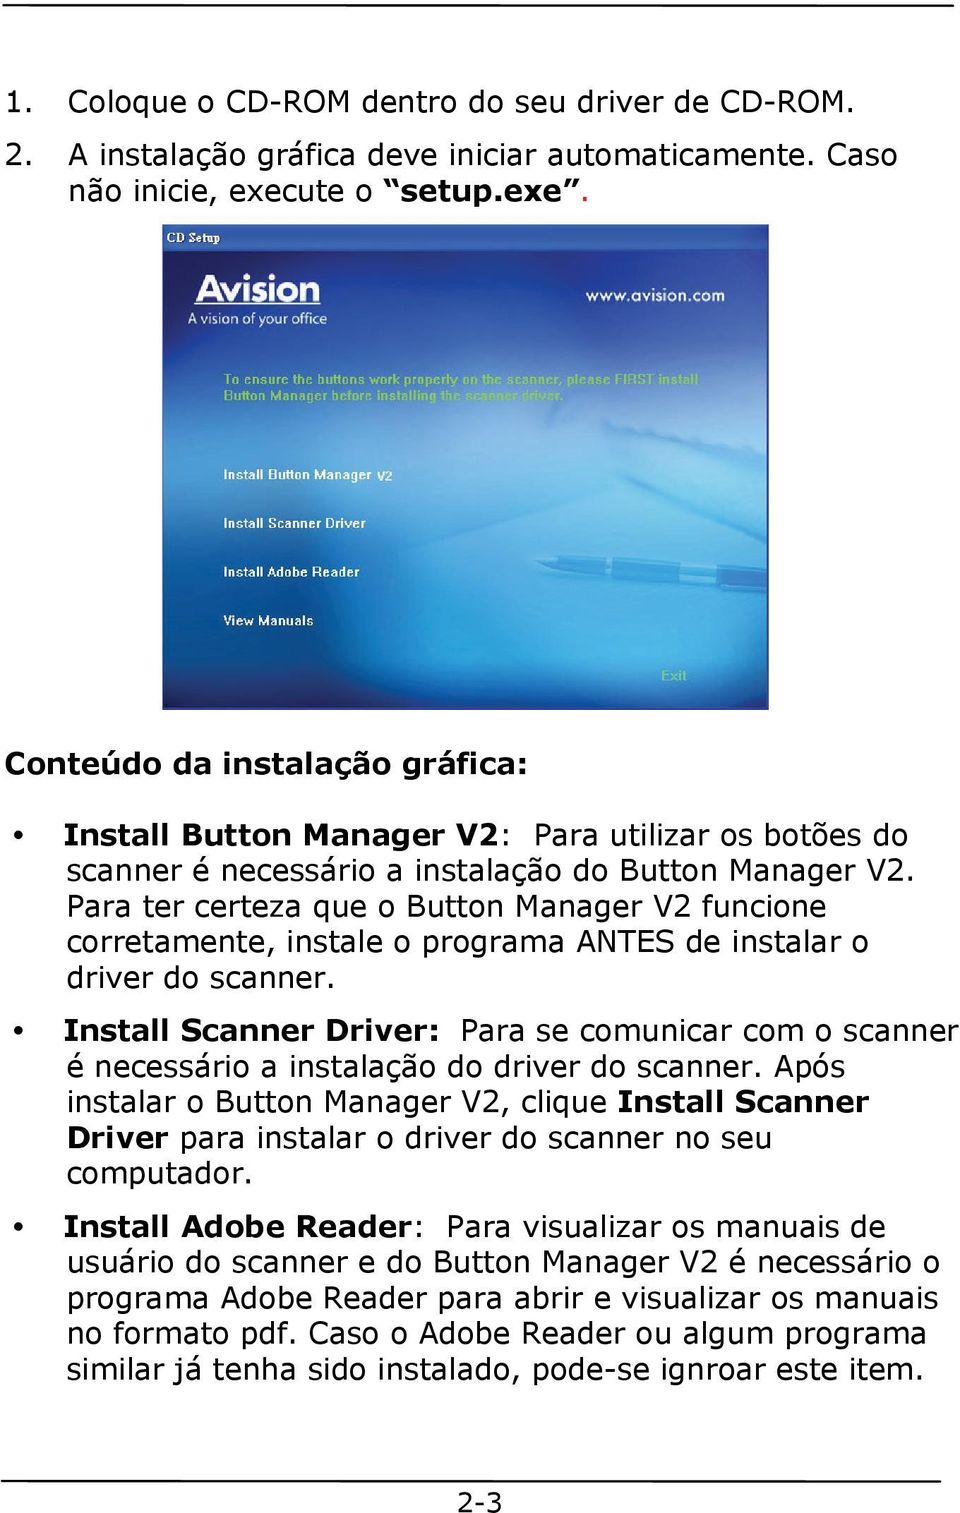 Para ter certeza que o Button Manager V2 funcione corretamente, instale o programa ANTES de instalar o driver do scanner.